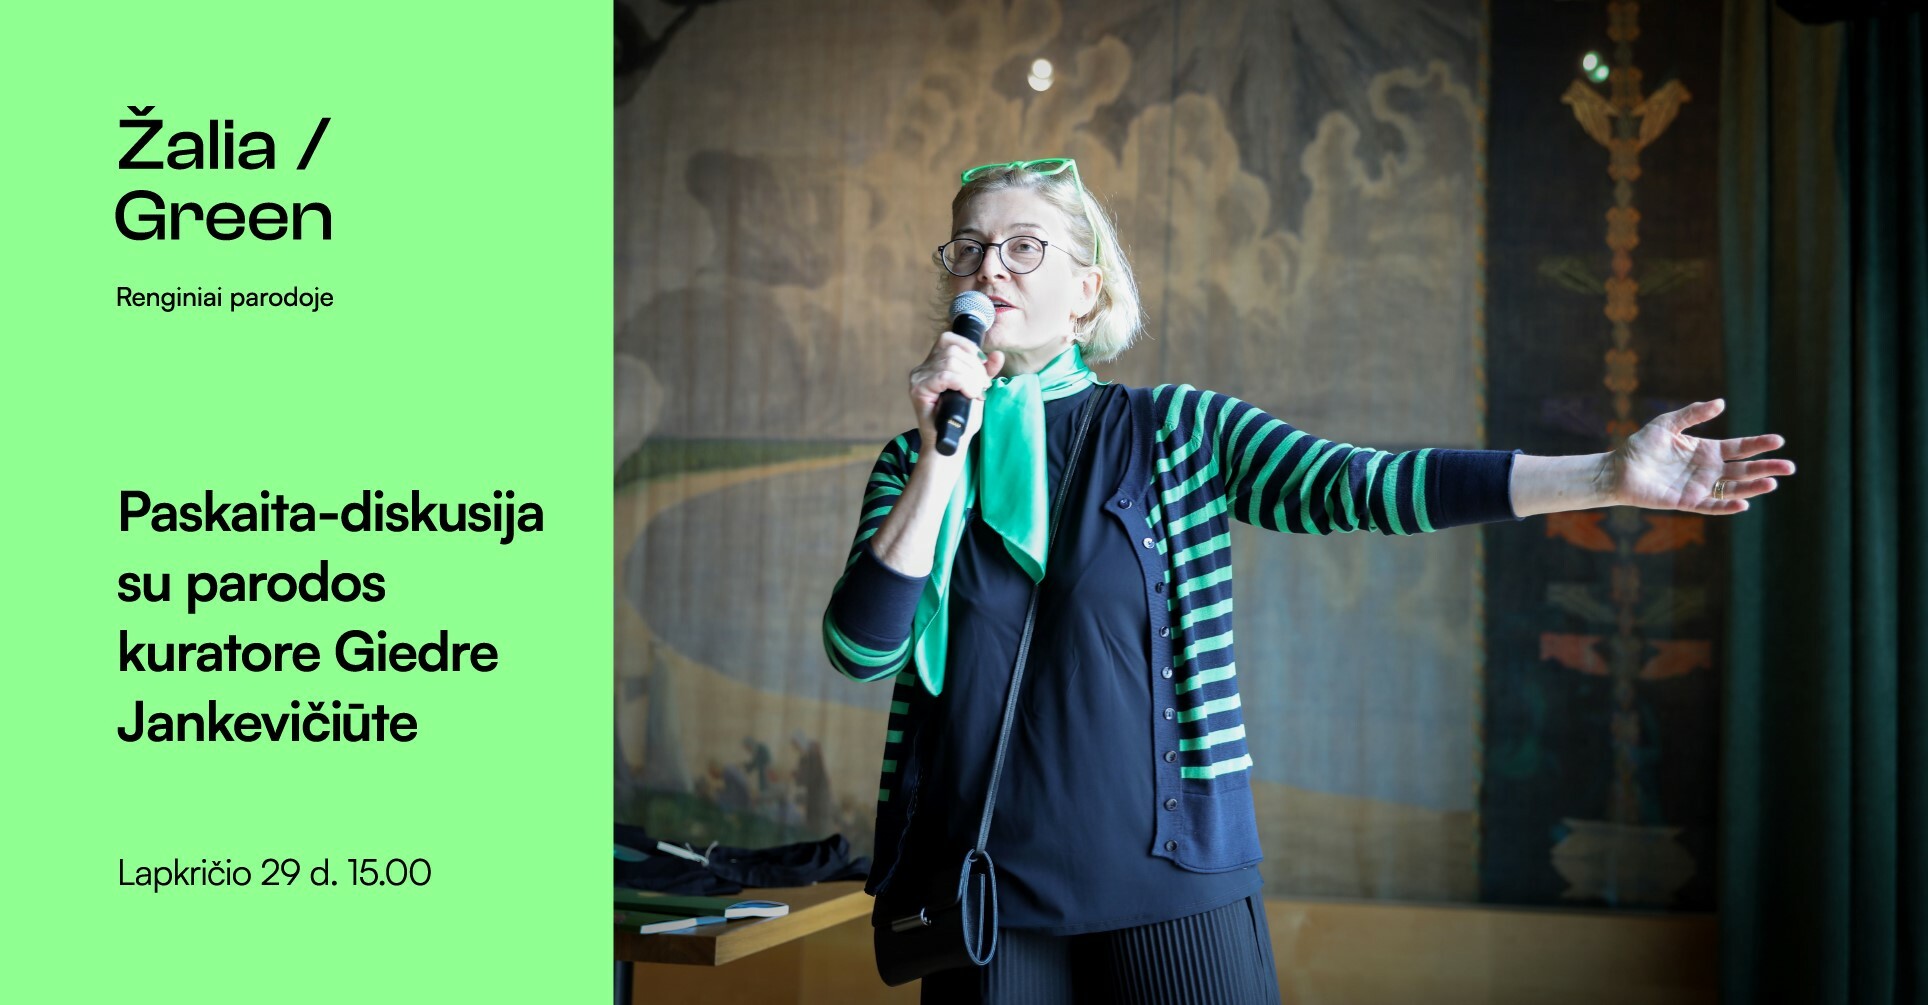 Paskaita-diskusija su parodos „Žalia“ kuratore Giedre Jankevičiūte